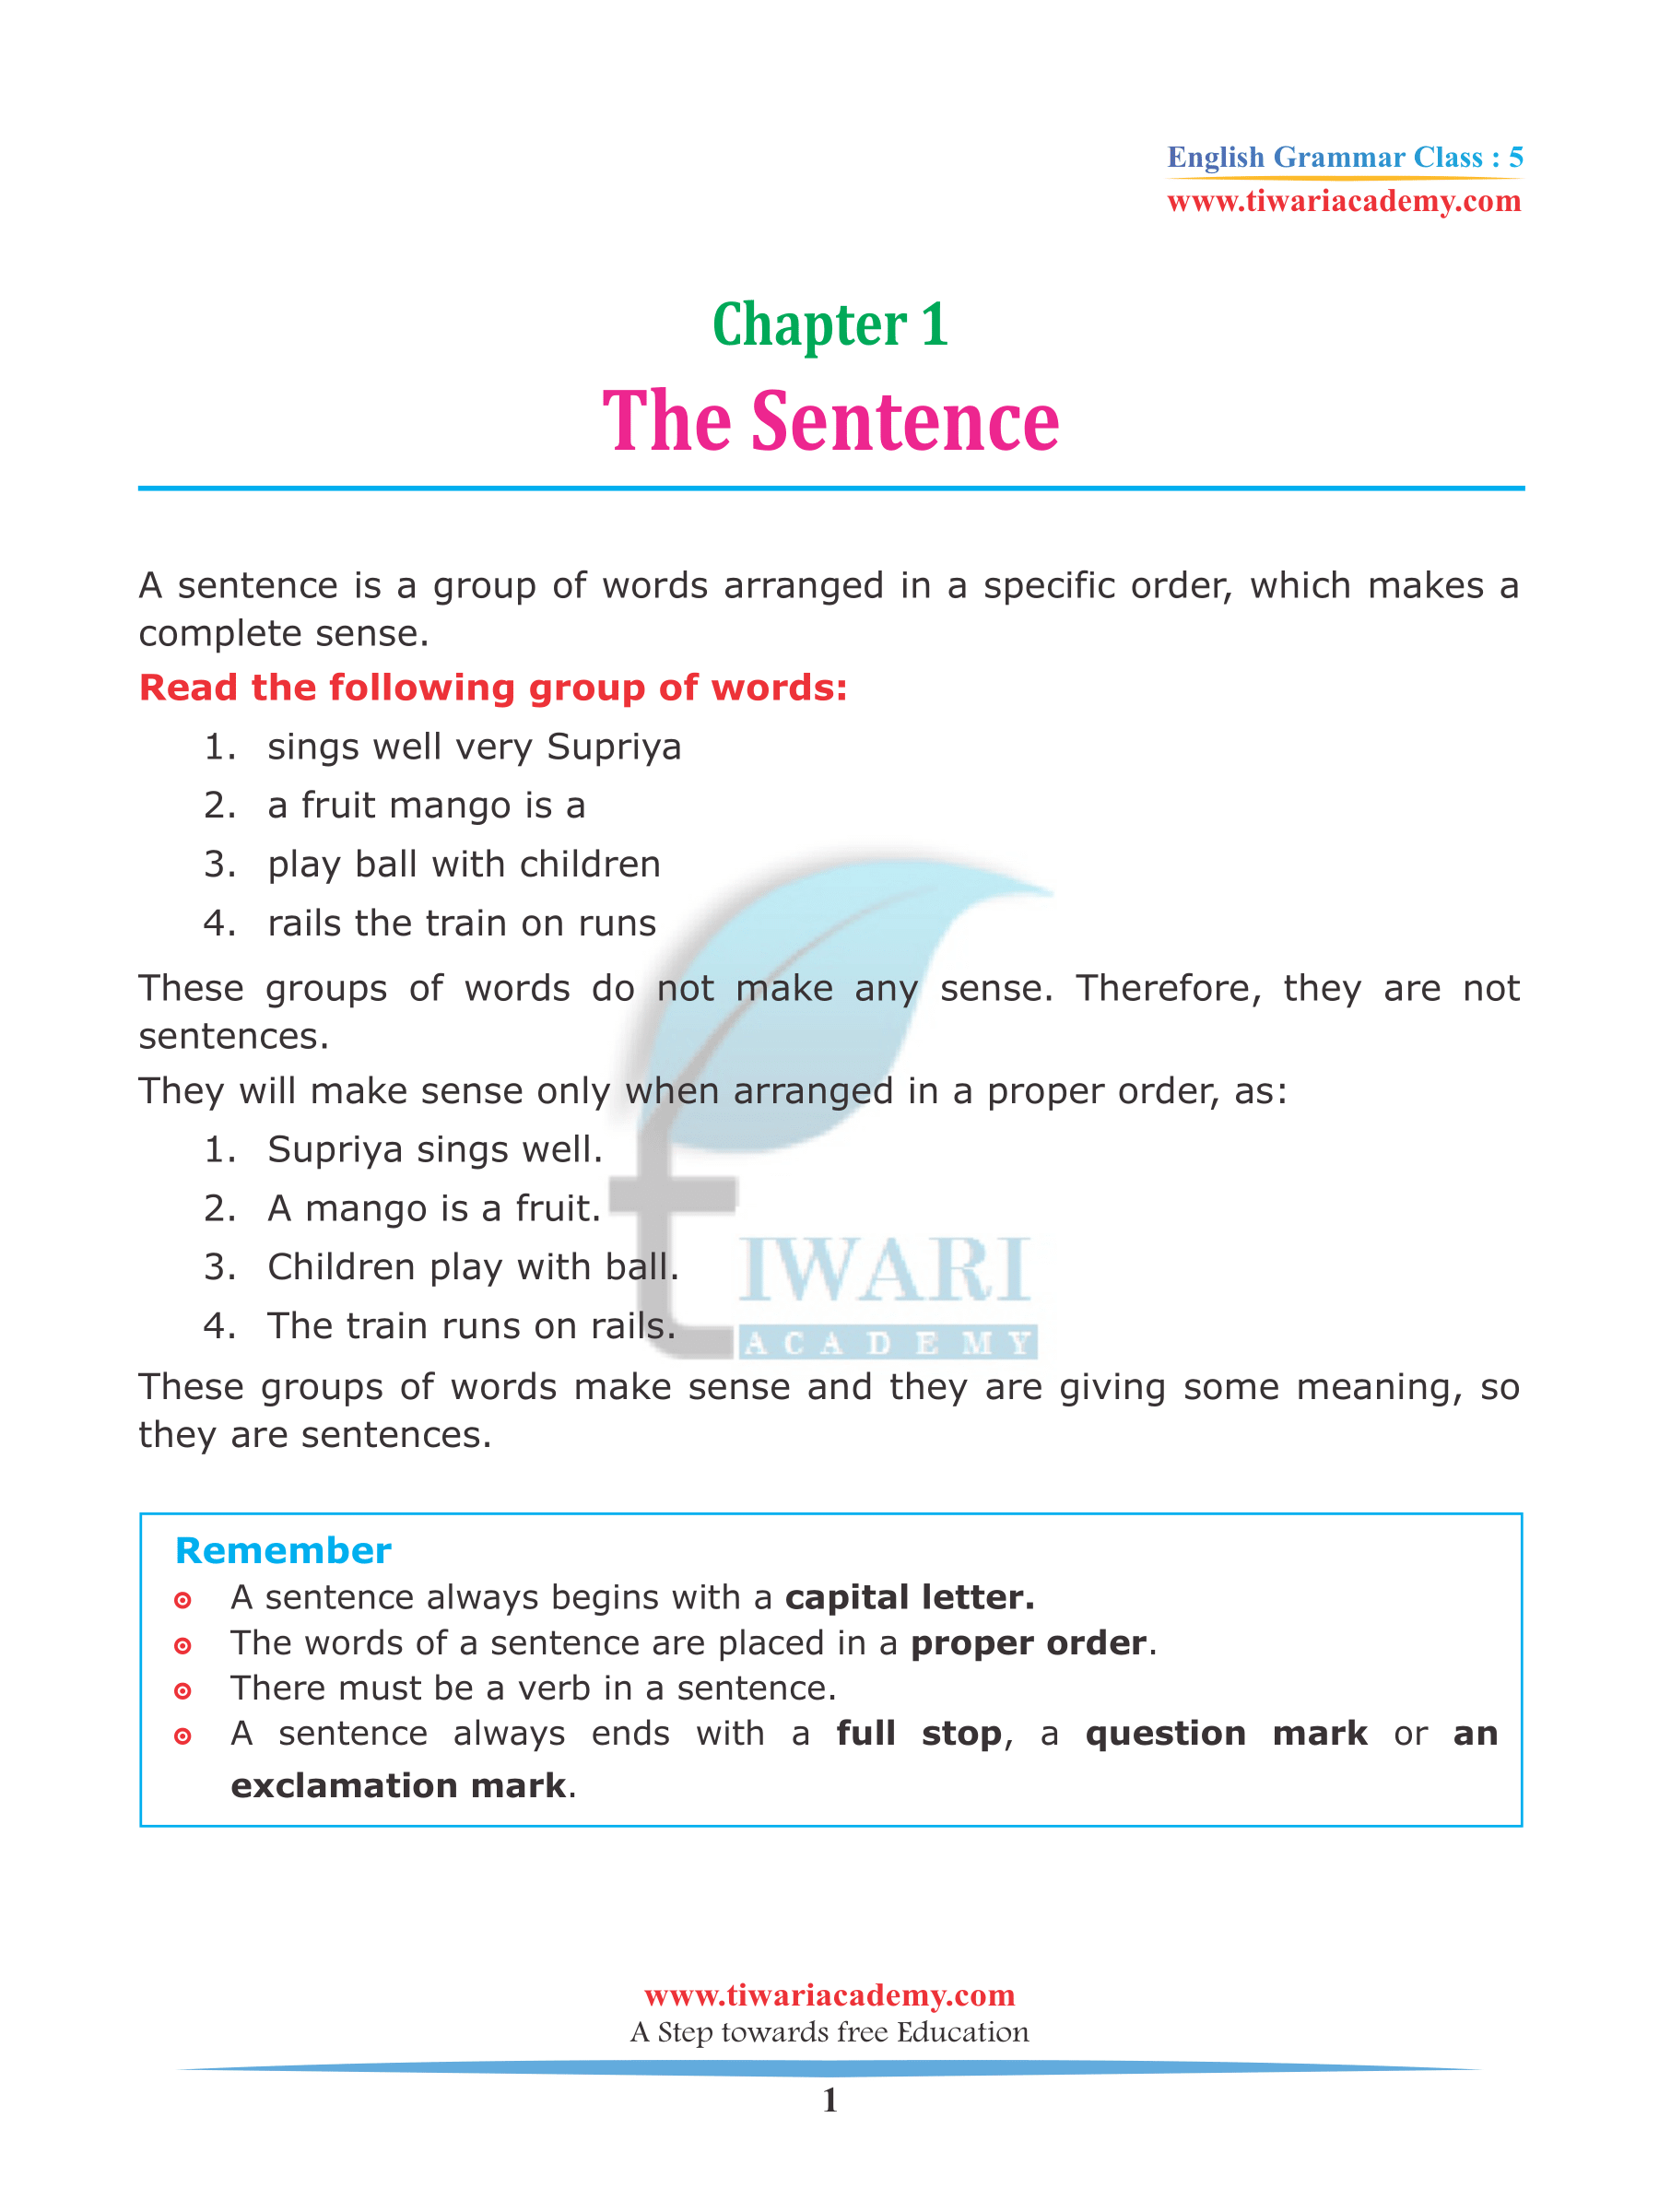 Class 5 English Grammar Chapter 1 The Sentence 2022-2023